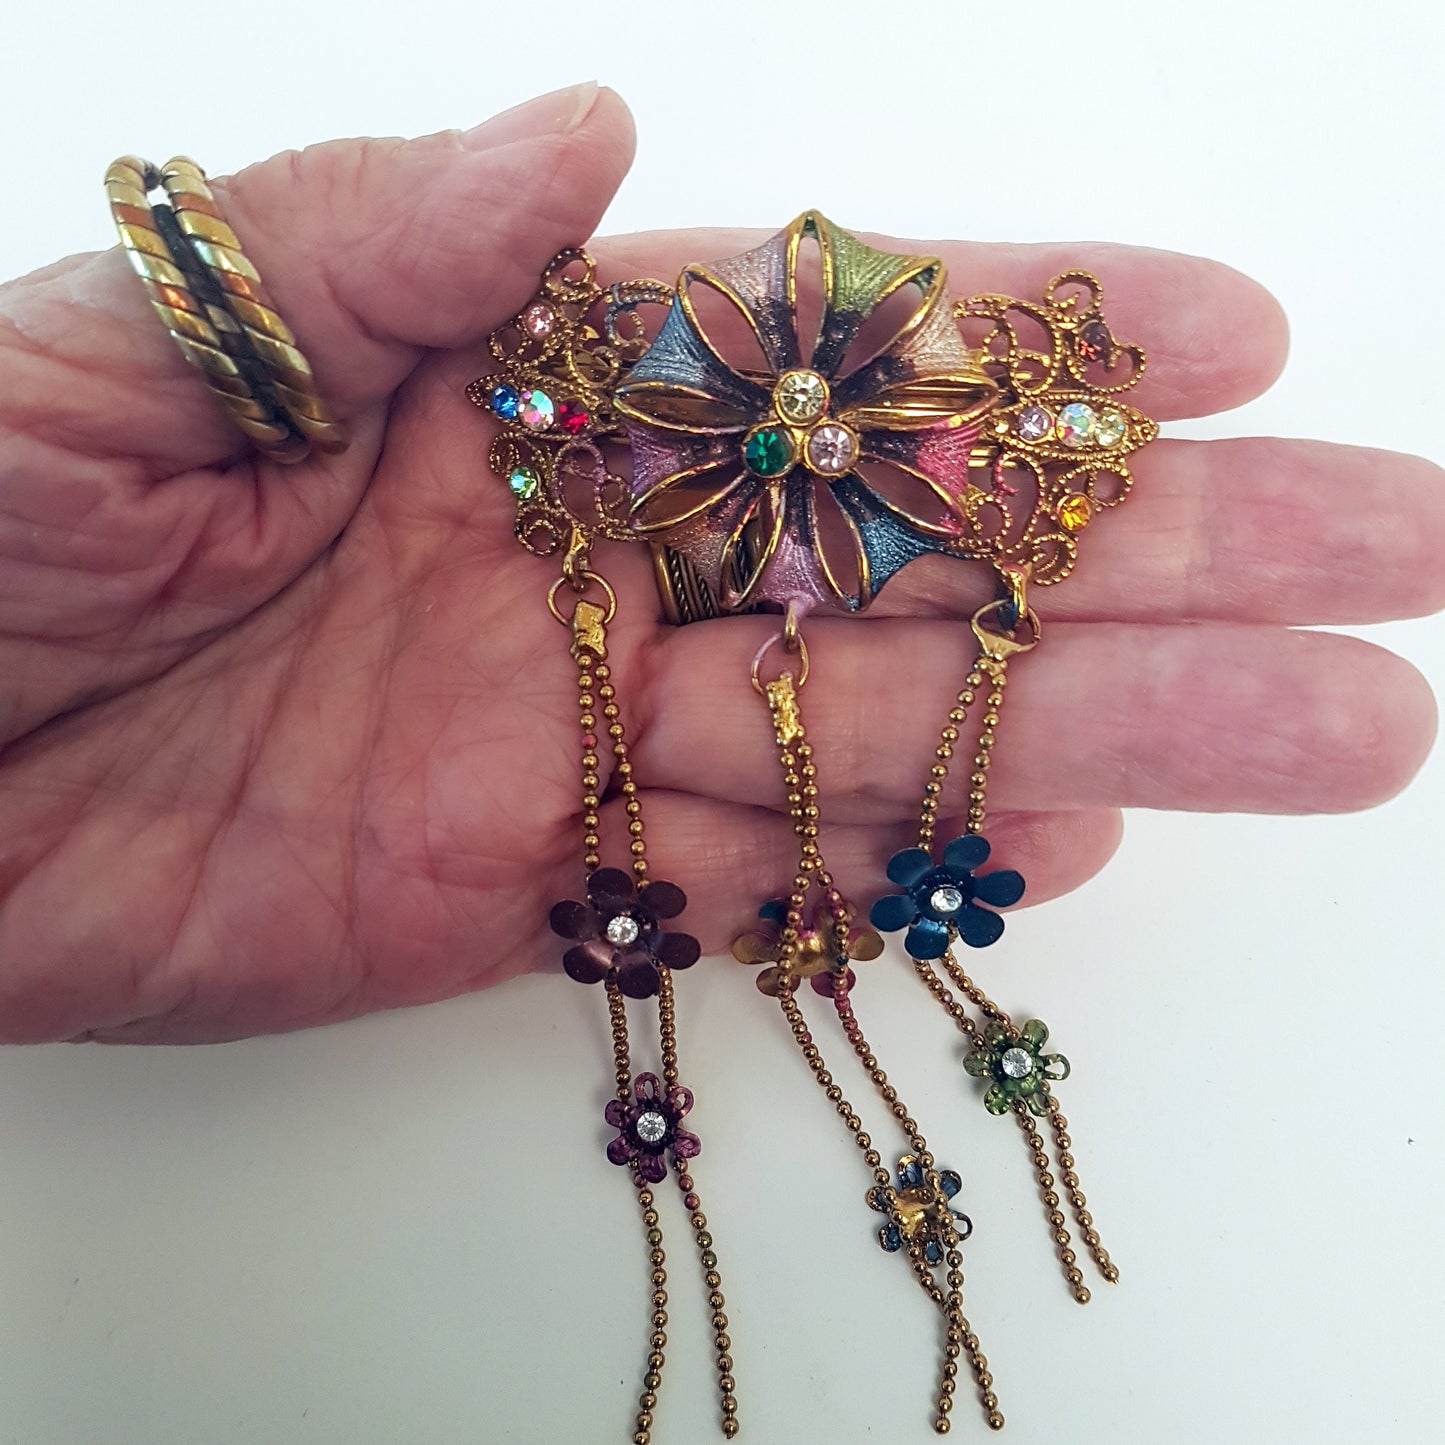 Barrette à cheveux vintage dans un motif floral médiéval. Bijoux de cheveux avec strass dans des tons doux de rose et de bleu. Détails en métal doré.